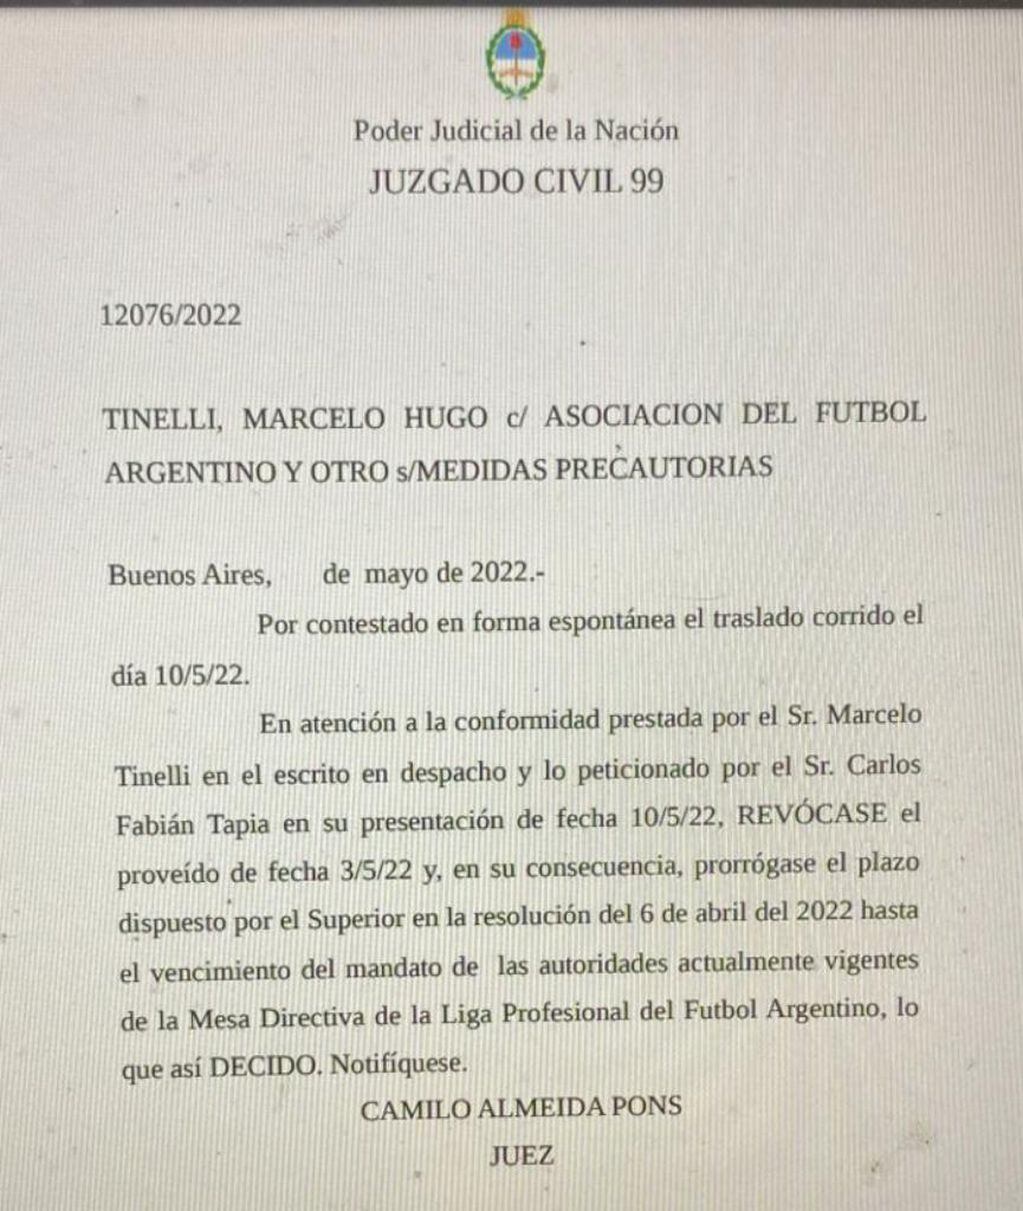 La resolución del juez Camilo Almeida Pons.